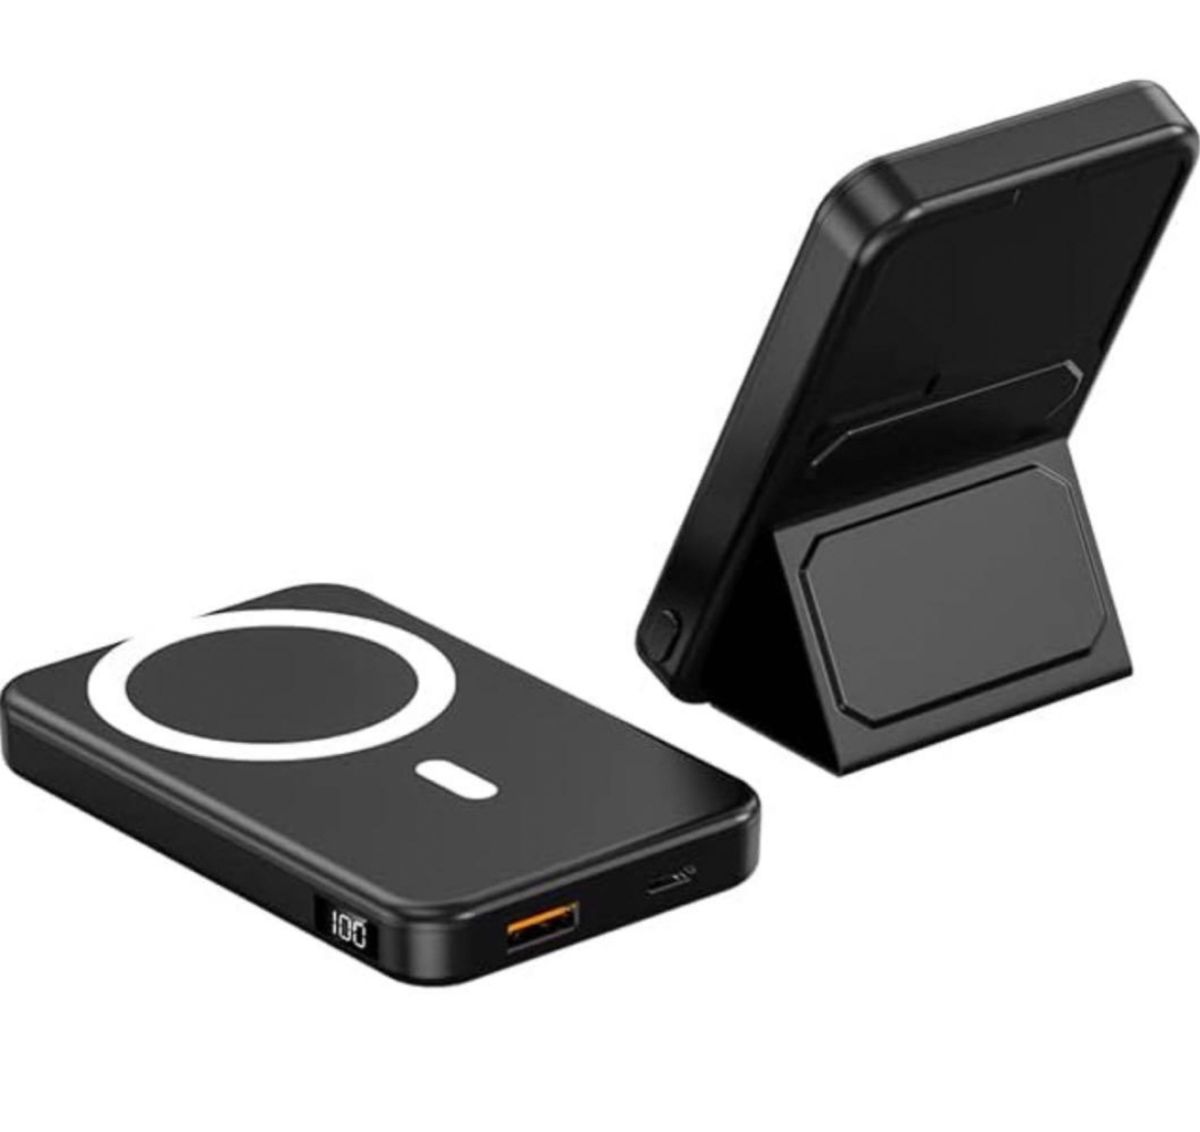 MagSafeモバイルバッテリー iphone 10000mAh 大容量 22.5W急速充電 ワイヤレス マグネット式 ブラック